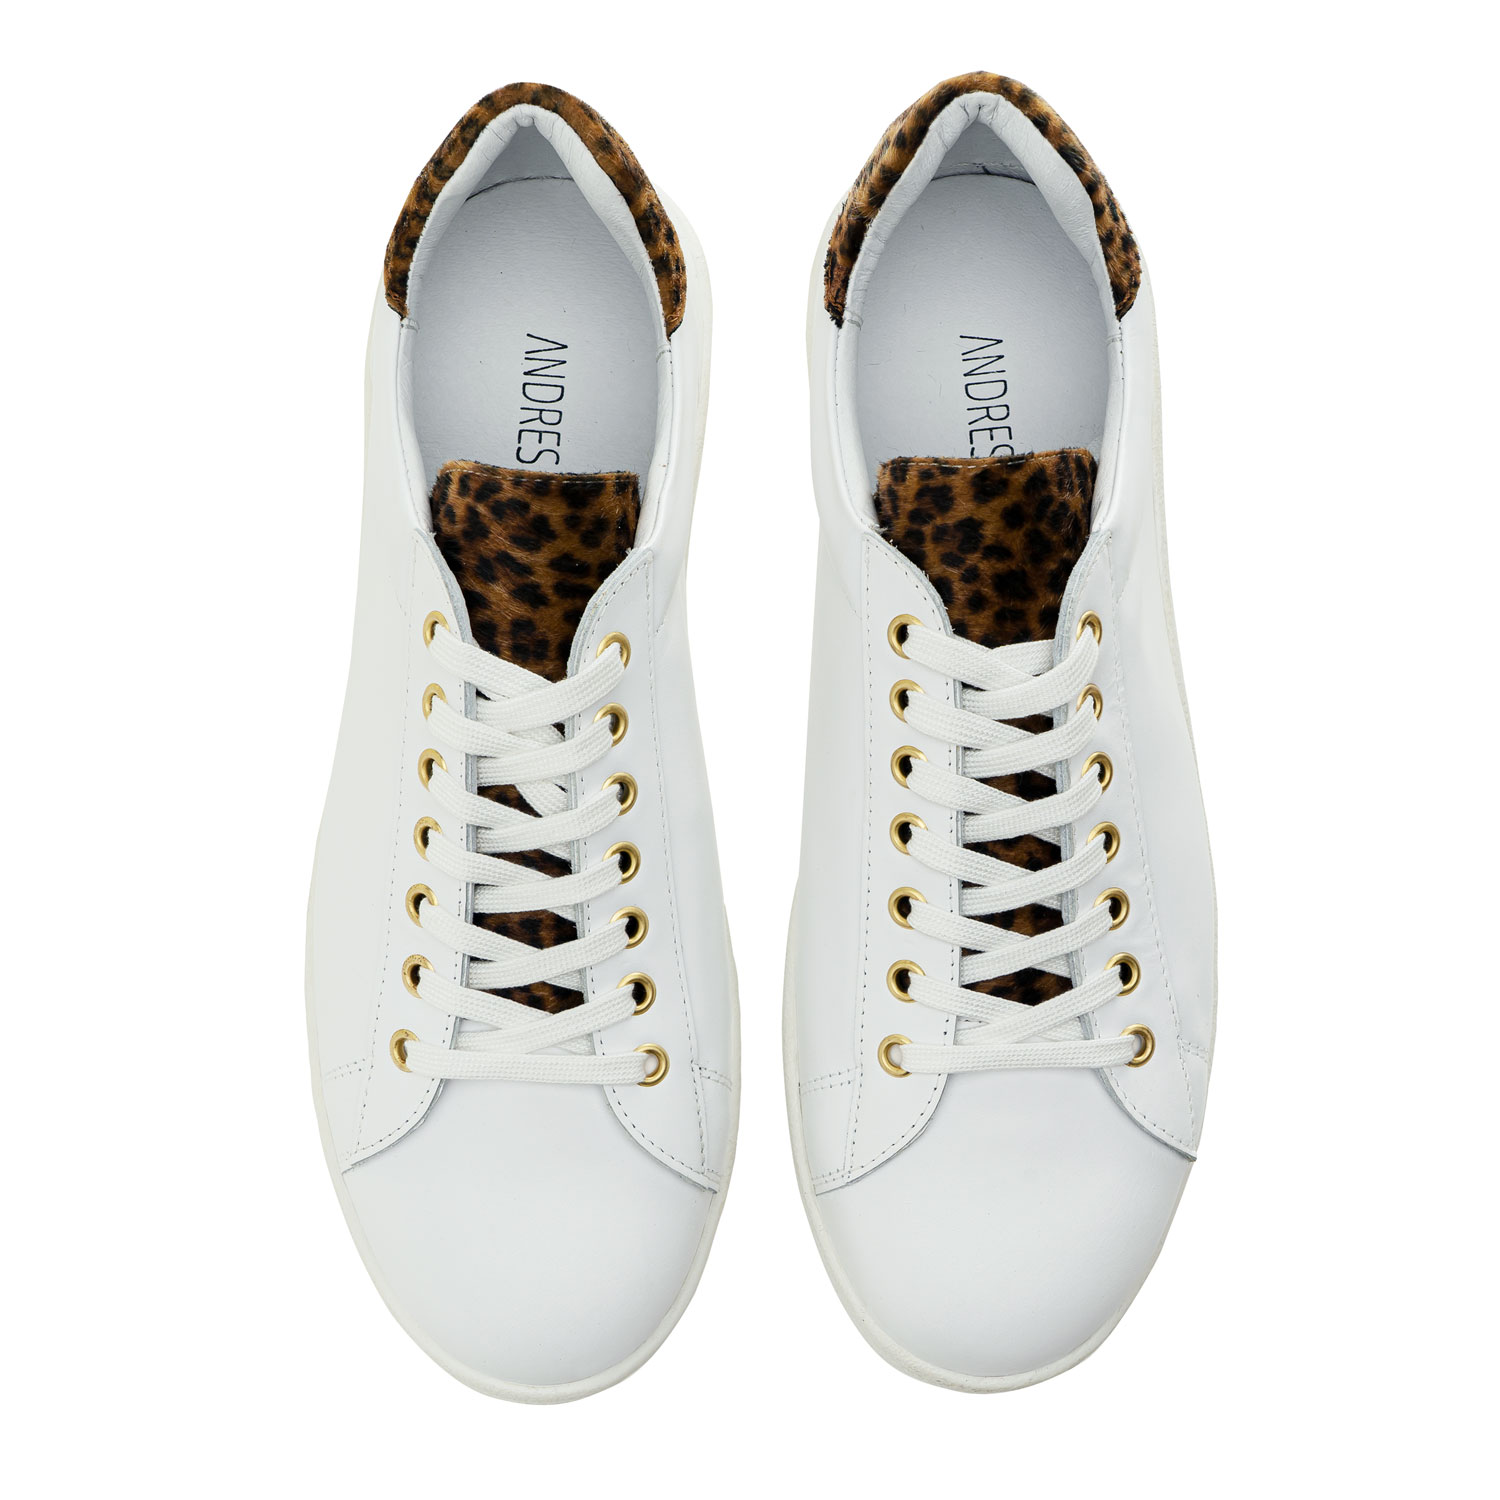 Sneaker aus hochwertigem Leder in weiß mit Leopardenmusterung - MADE in SPAIN 